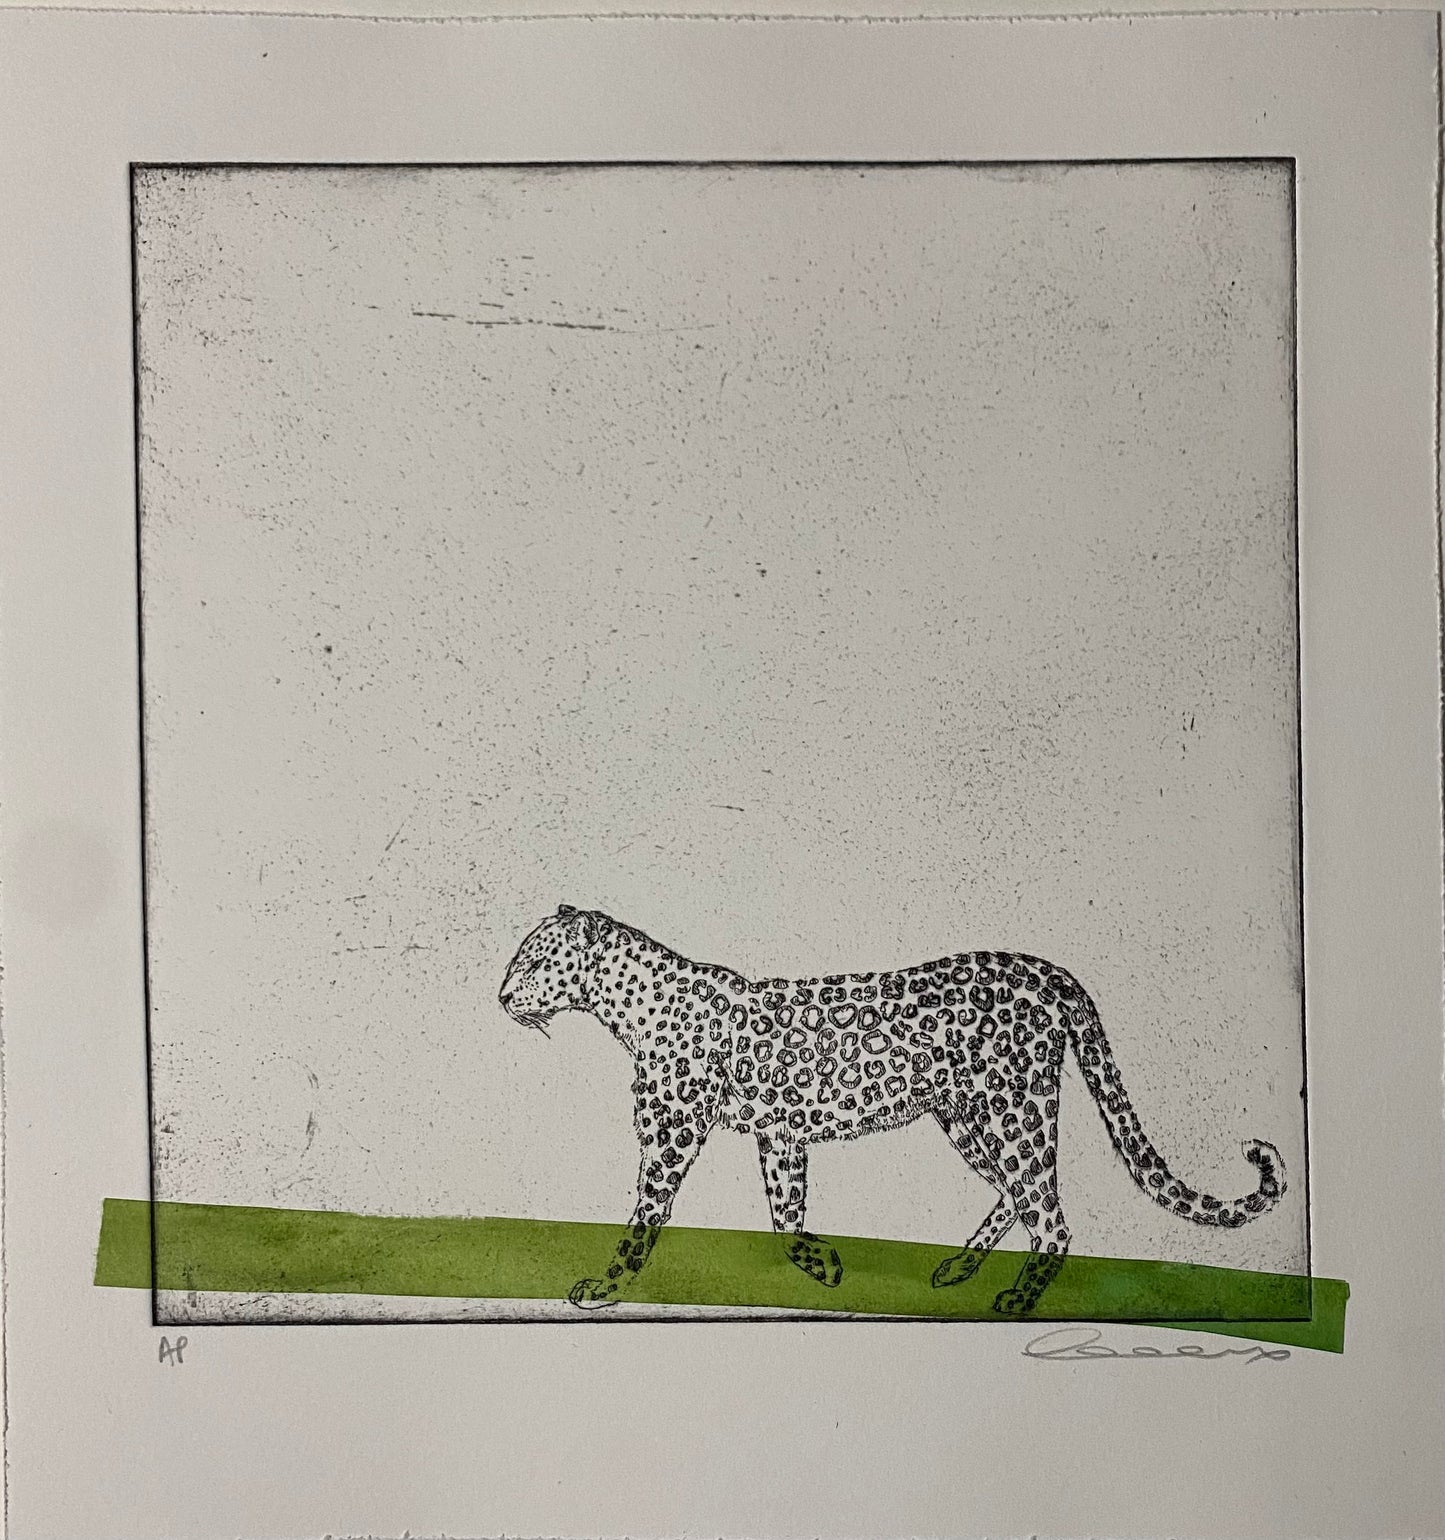 Walking Leopard With Green Stripe